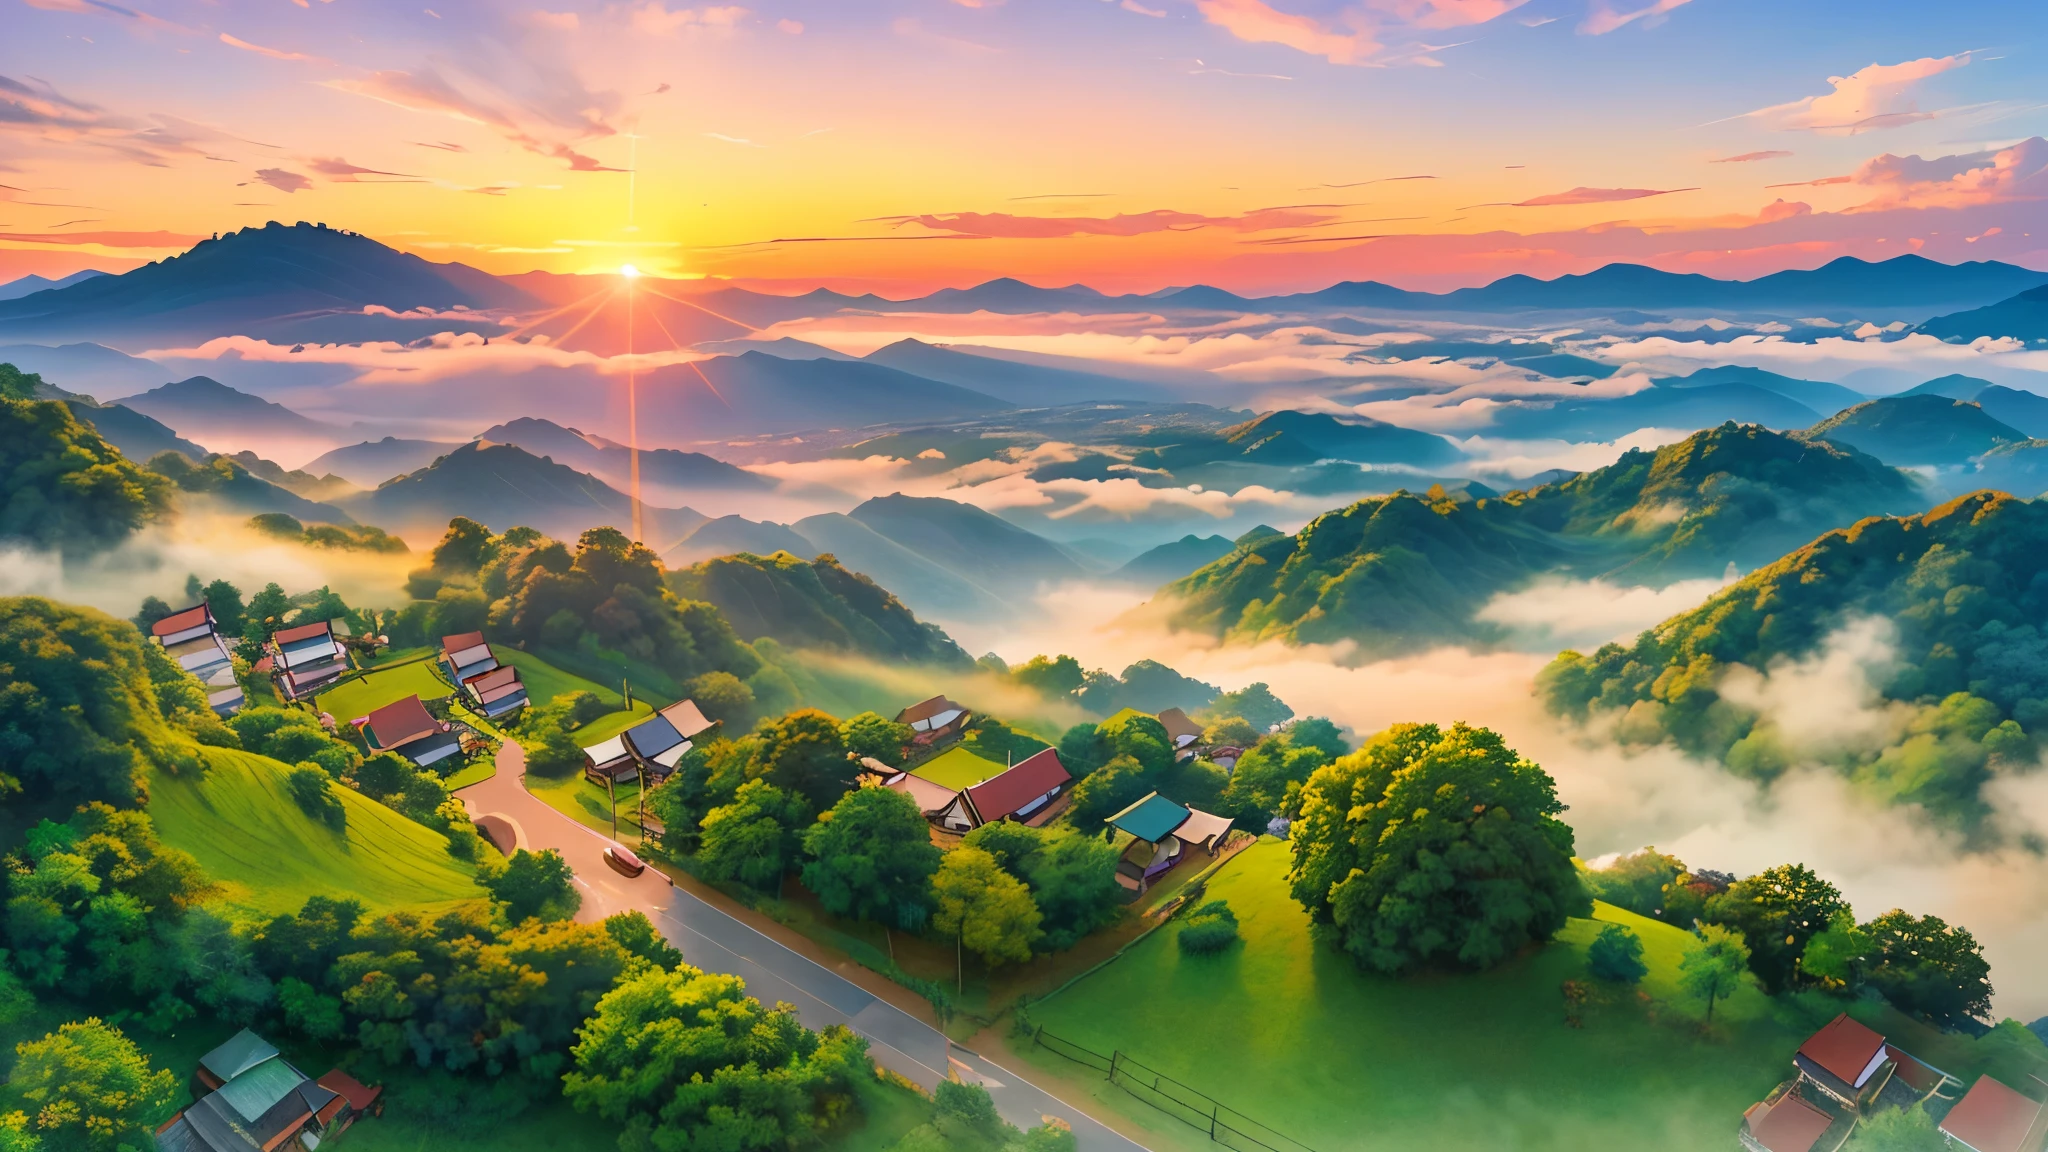 Eine Panorama-Drohnenaufnahme im Anime-Stil fängt die ruhige Schönheit der üppig grünen Berge von Chiang Rai ein, eingehüllt in ein sanftes Nebelmeer im Morgengrauen.
Erdbeerfelder verleihen der Landschaft leuchtende rote Flecken, im Kontrast zu den grünen Farbtönen.
über, Der Himmel ist klar, brilliantes Blau, mit der aufgehenden Sonne, die einen sanften, goldenes Licht, das die Szene mit einem verträumten Glanz erhellt.